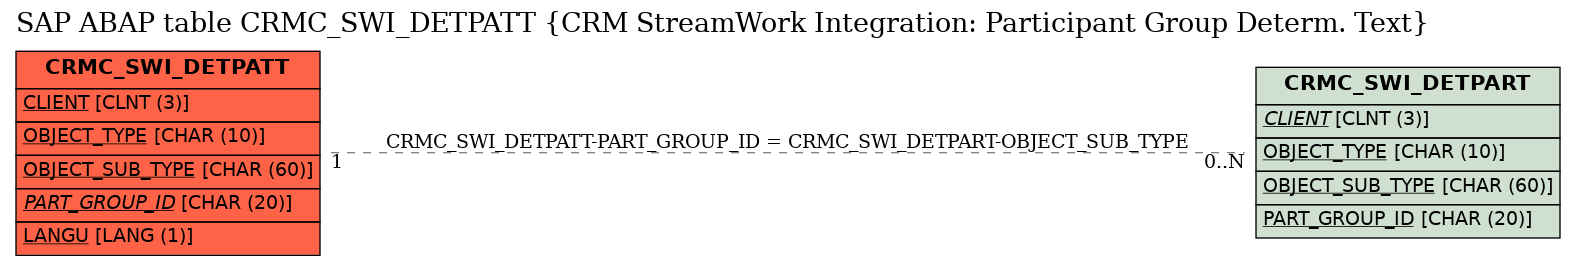 E-R Diagram for table CRMC_SWI_DETPATT (CRM StreamWork Integration: Participant Group Determ. Text)